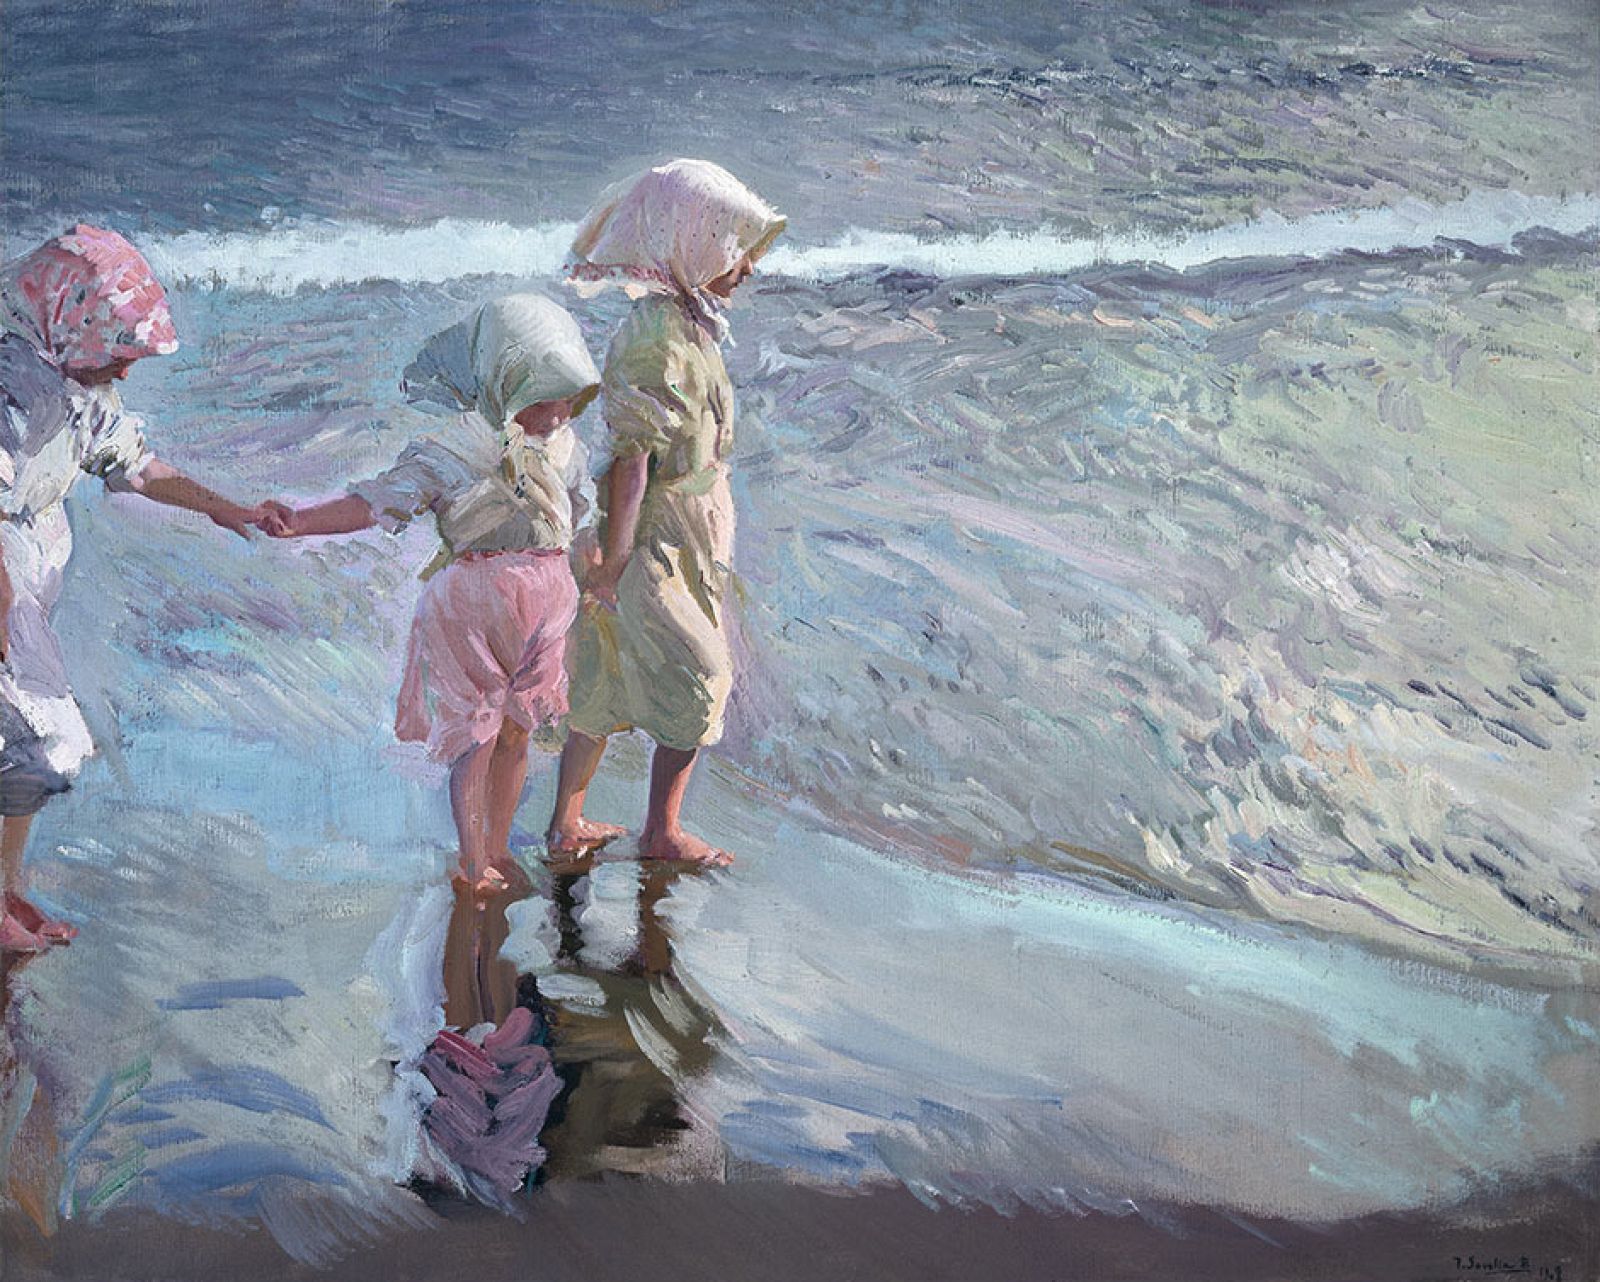 "Las tres hermanas en la playa", Sorolla (1908)